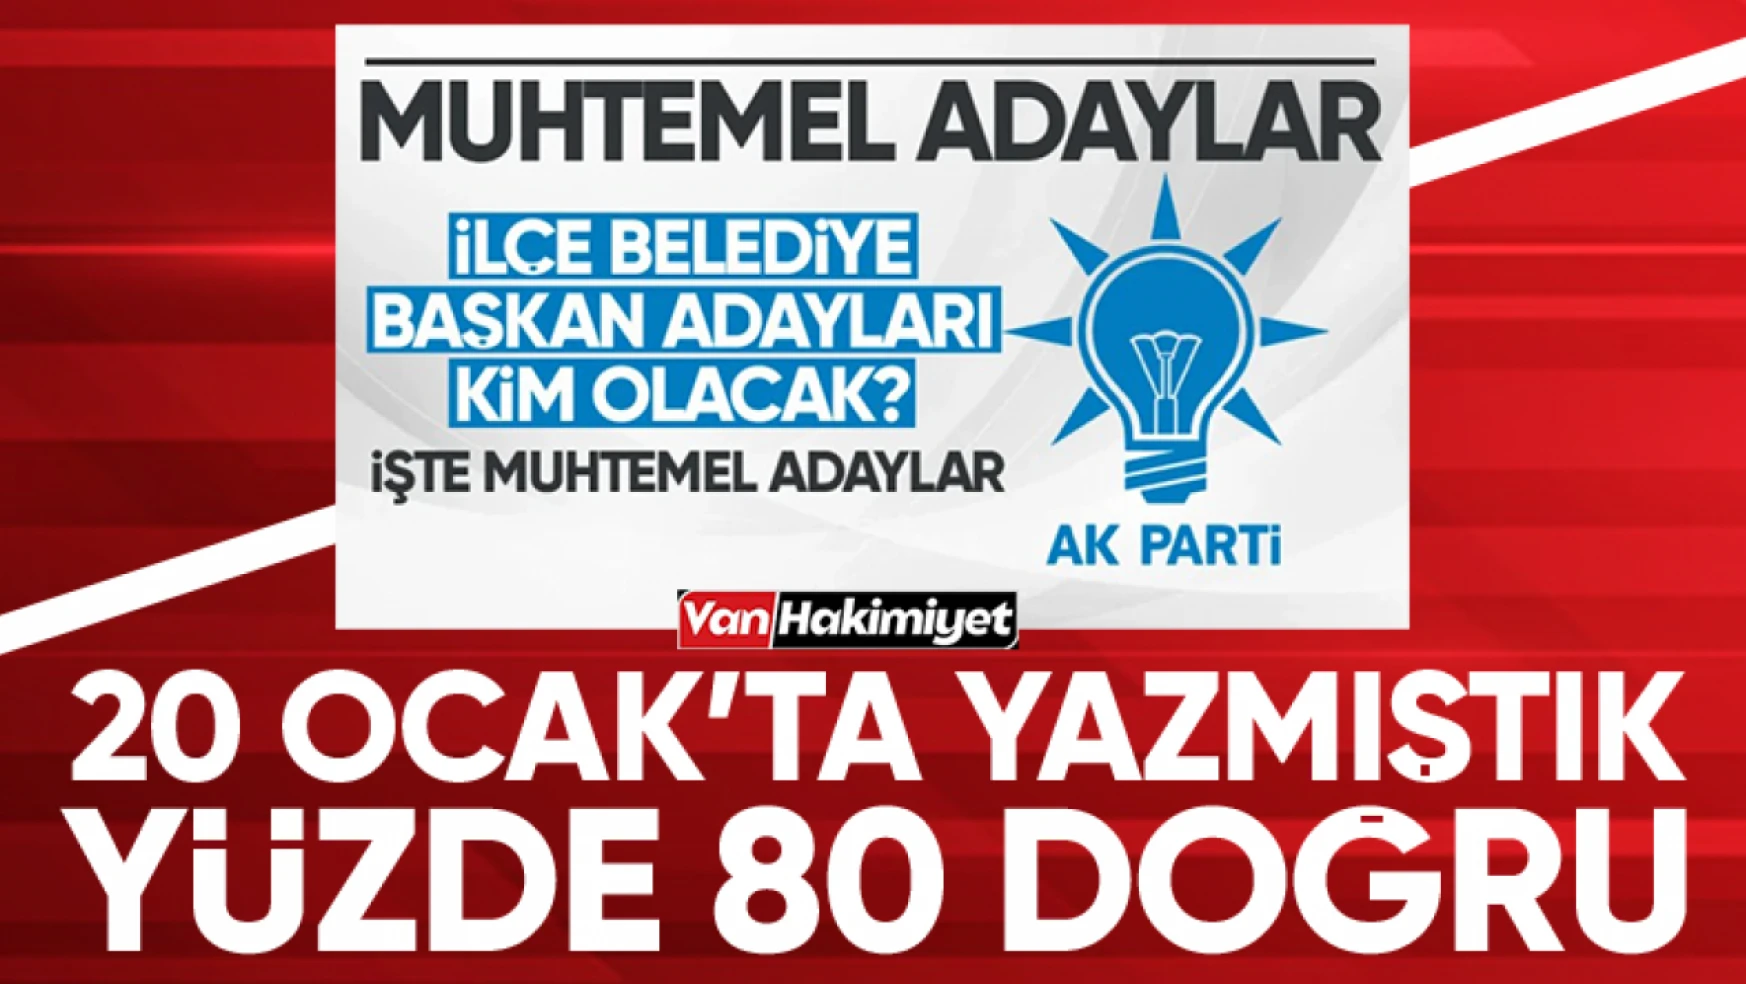 AK Parti ilçe belediye başkan adaylarını tahmin etmiştik! Yanılmadık...